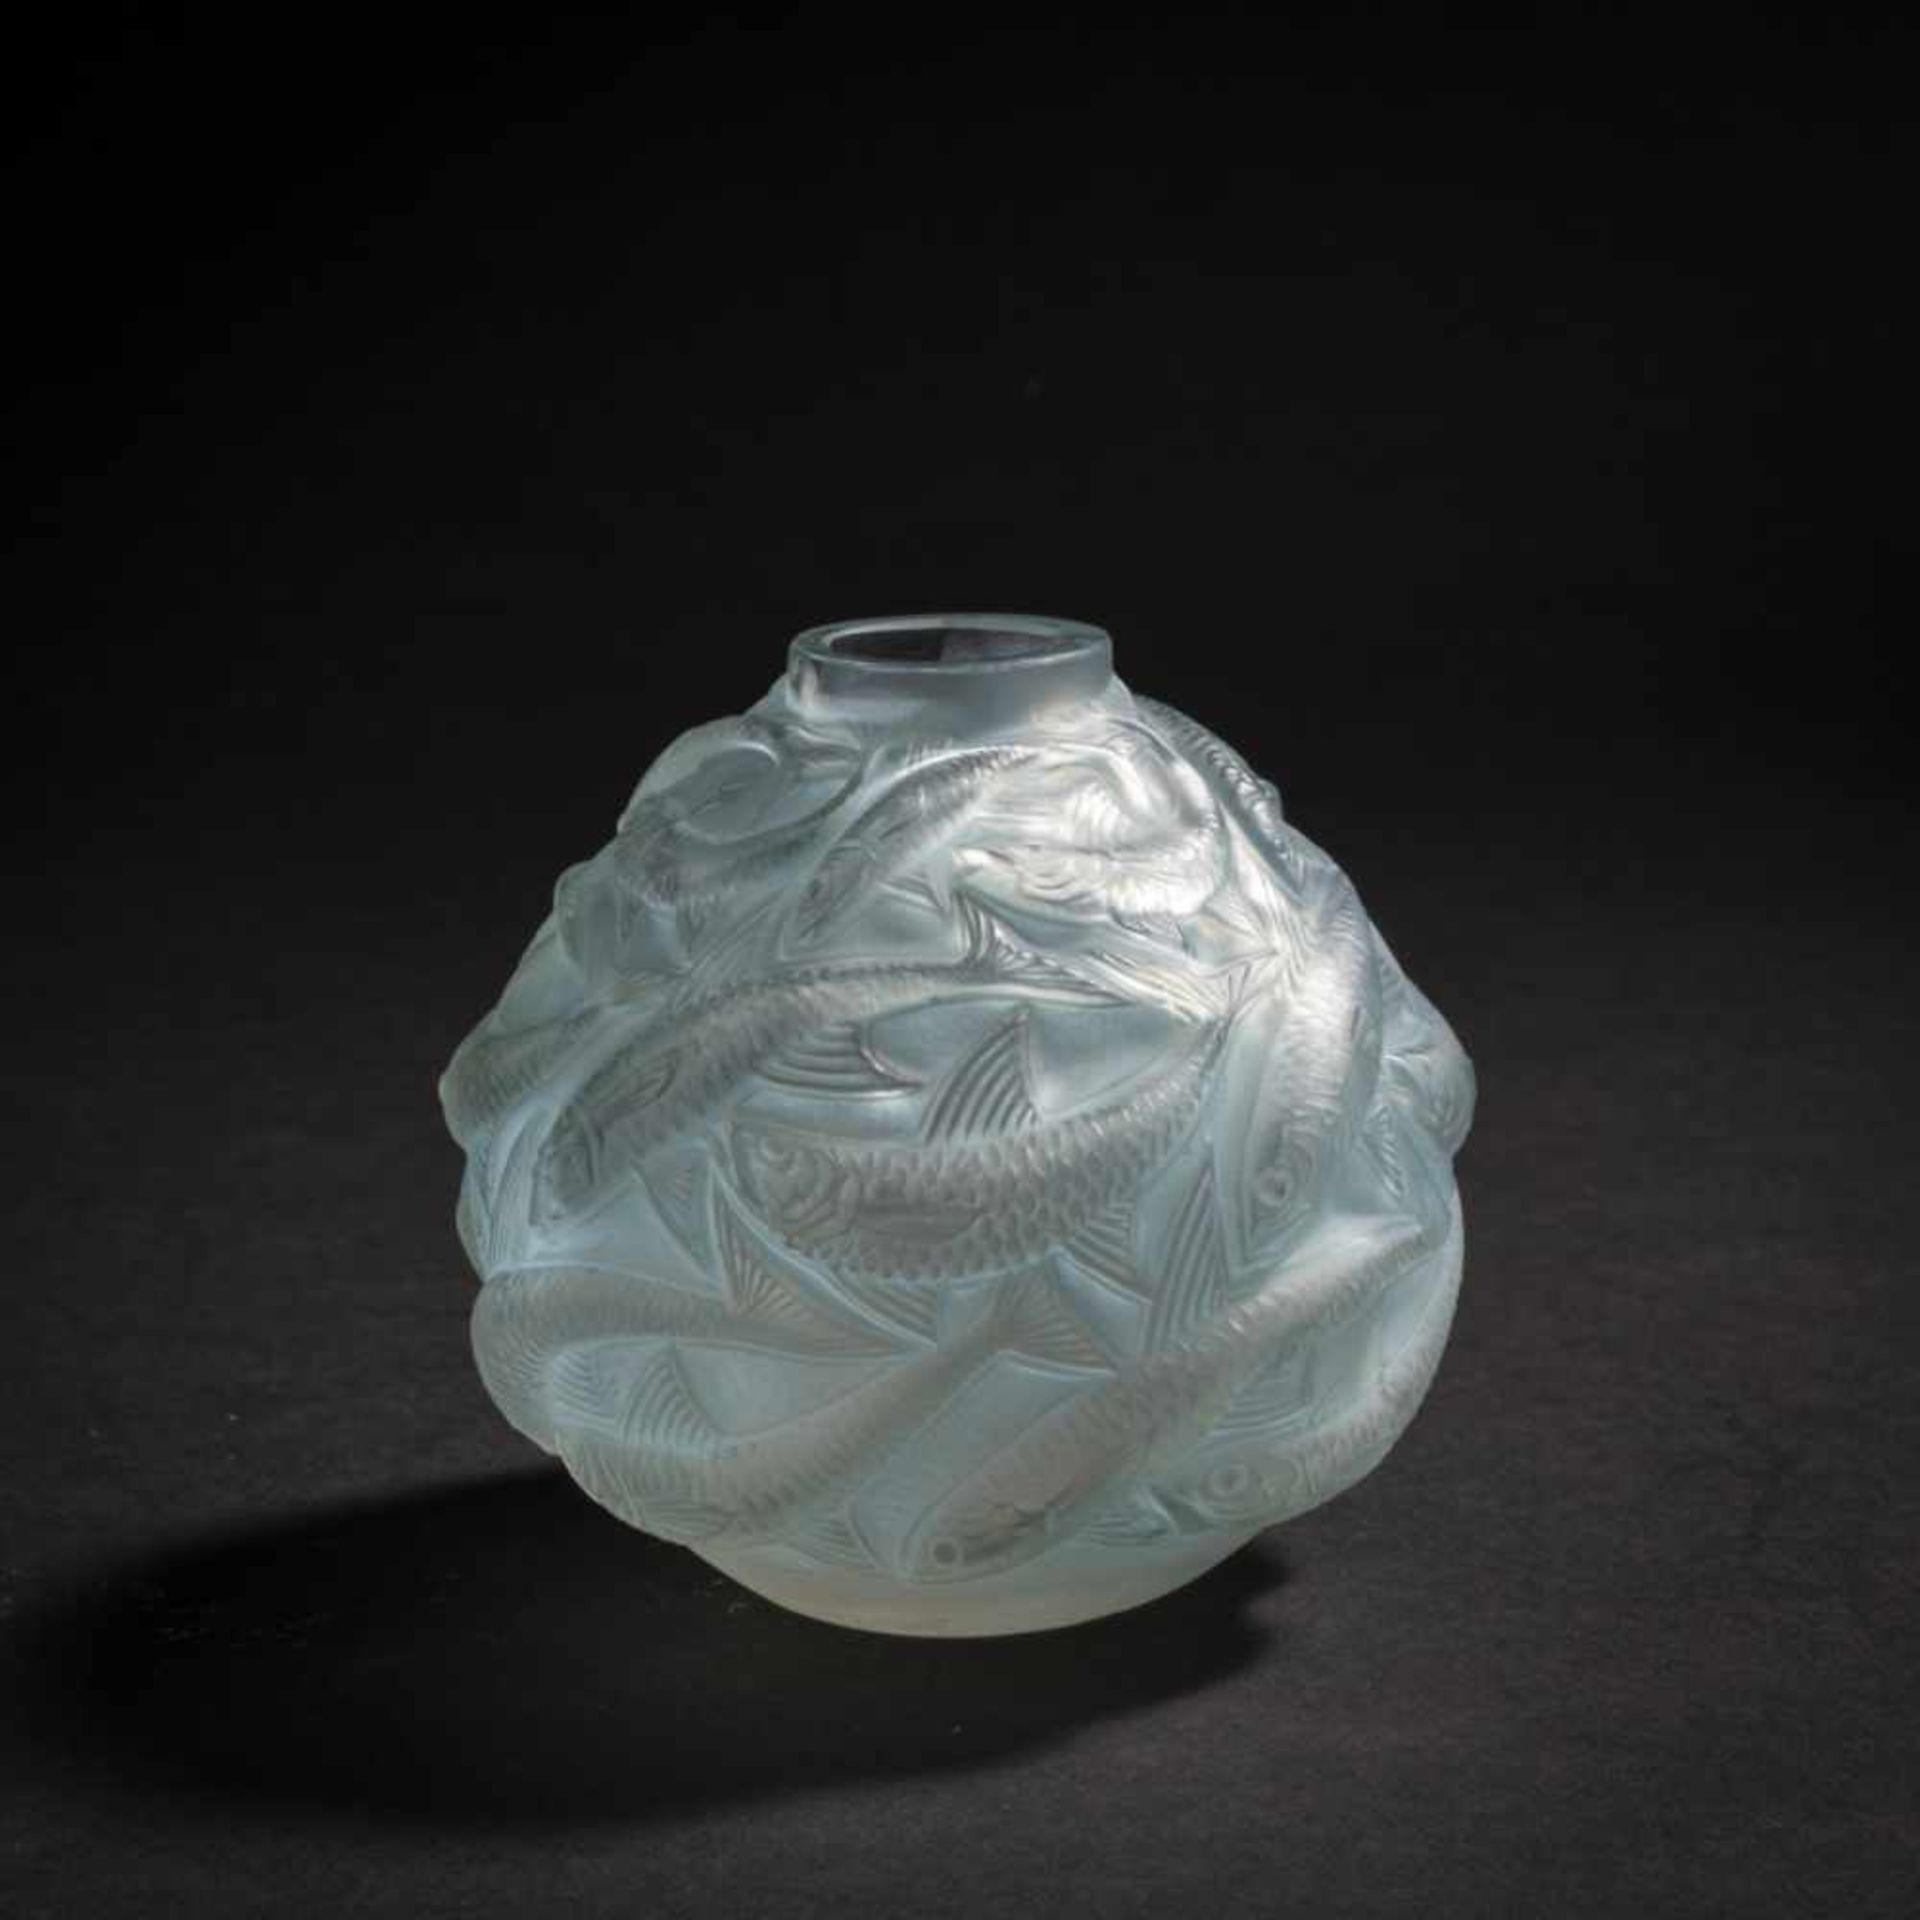 René Lalique, 'Oléron' vase, 1927'Oléron' vase, 1927H. 9 cm. Clear, mould-blown glass, satined, blue